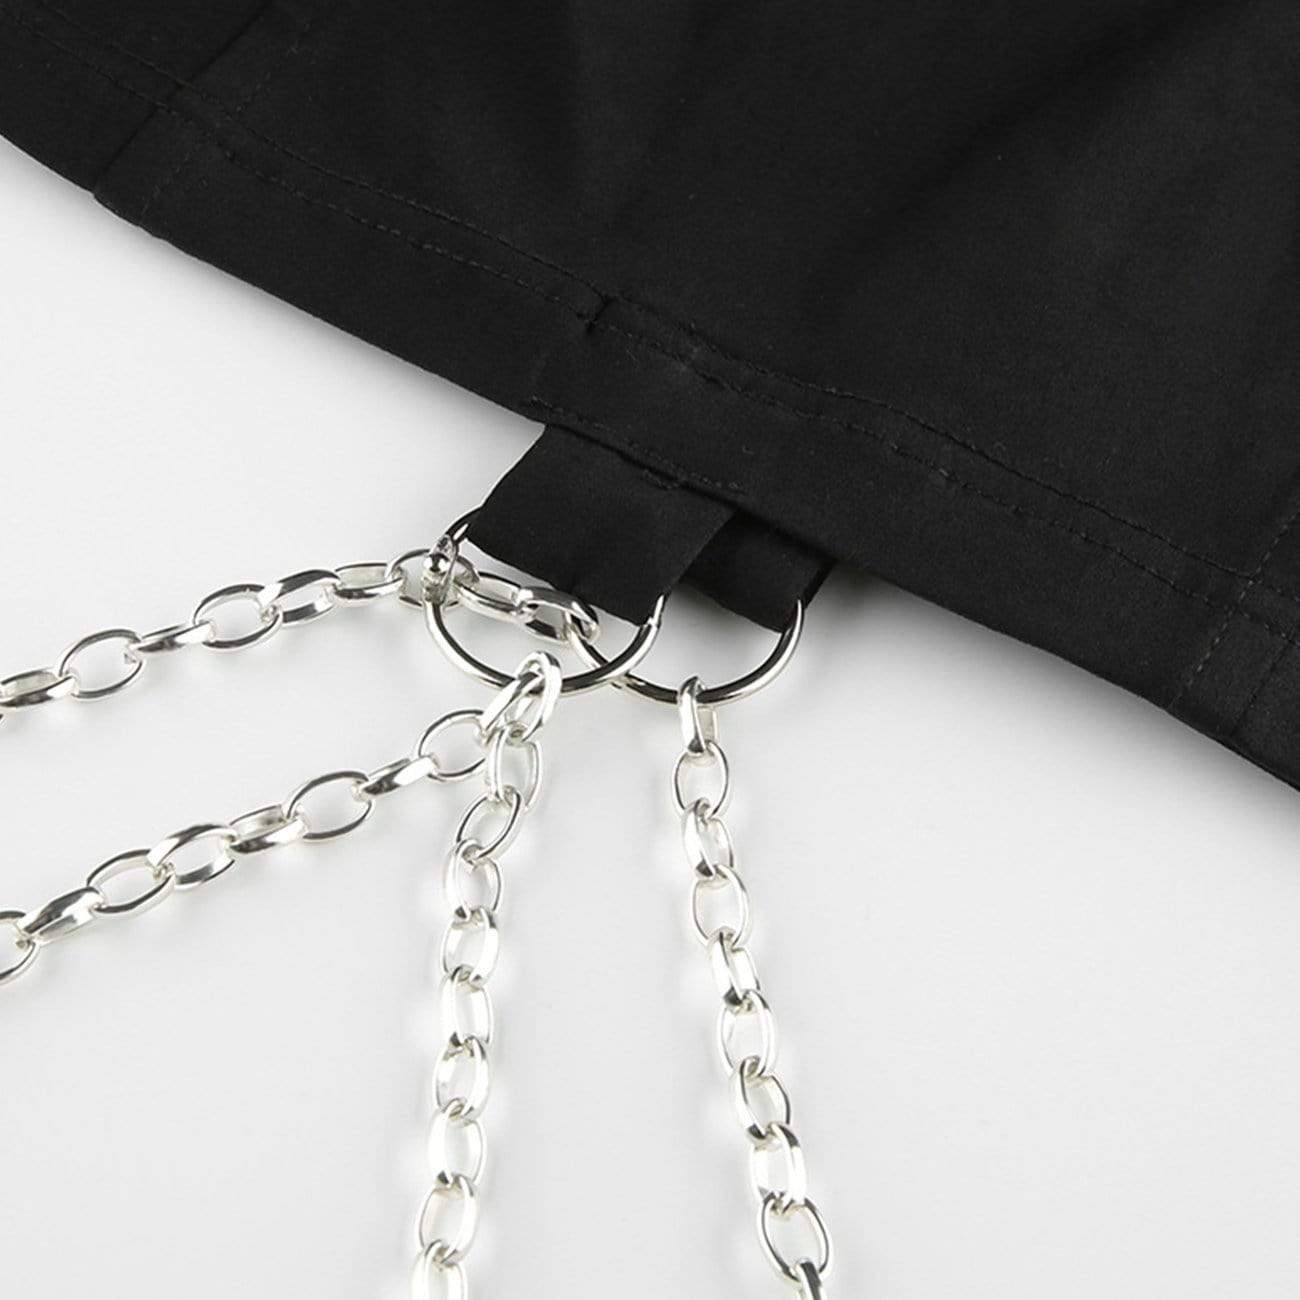 Cyberpunk Chain Belts Vest